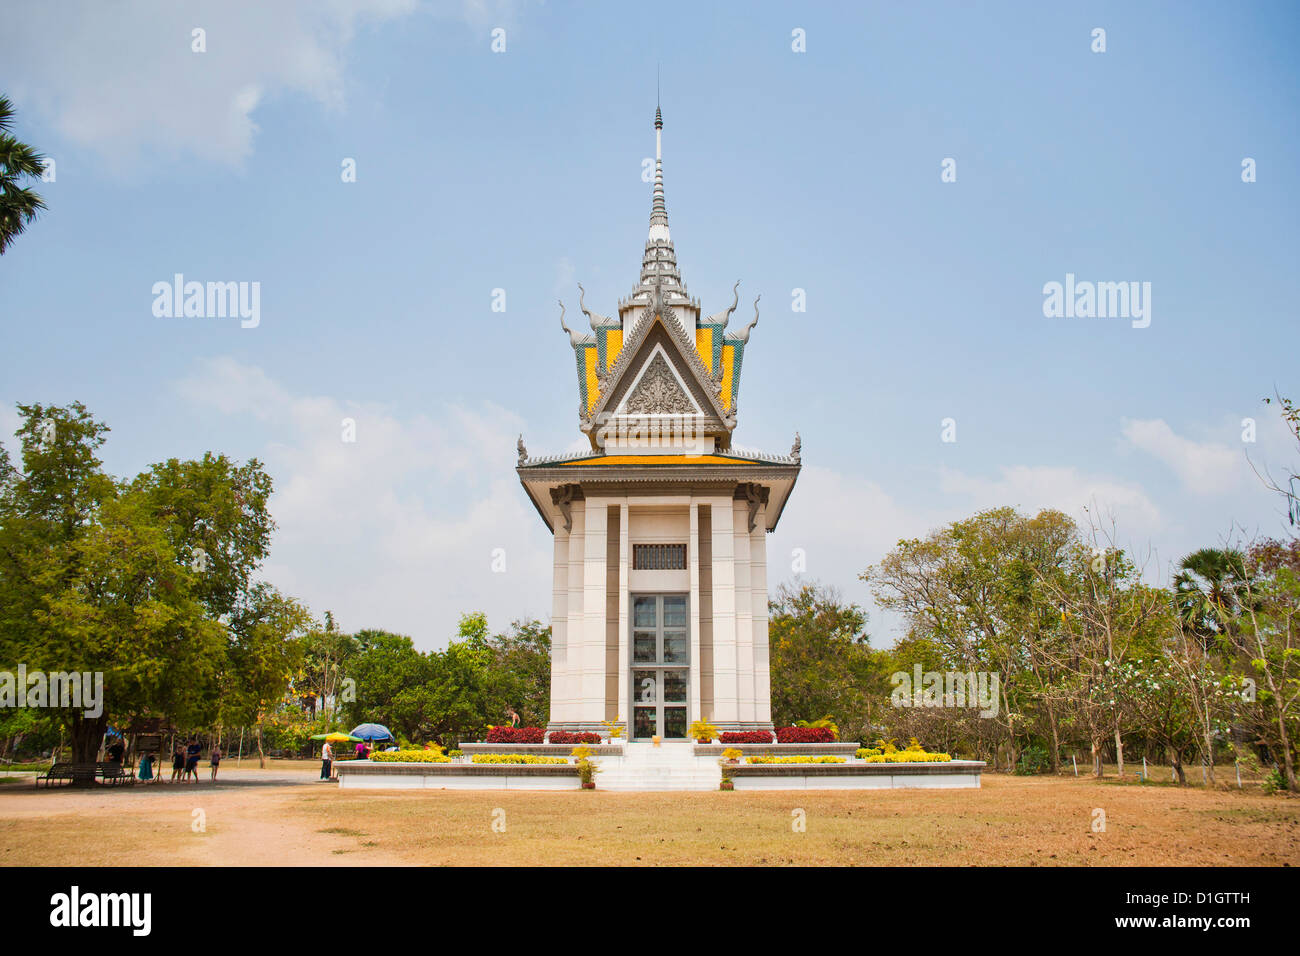 Monumento in memoria in corrispondenza dei campi di sterminio in Phnom Penh Cambogia, Indocina, Asia sud-orientale, Asia Foto Stock